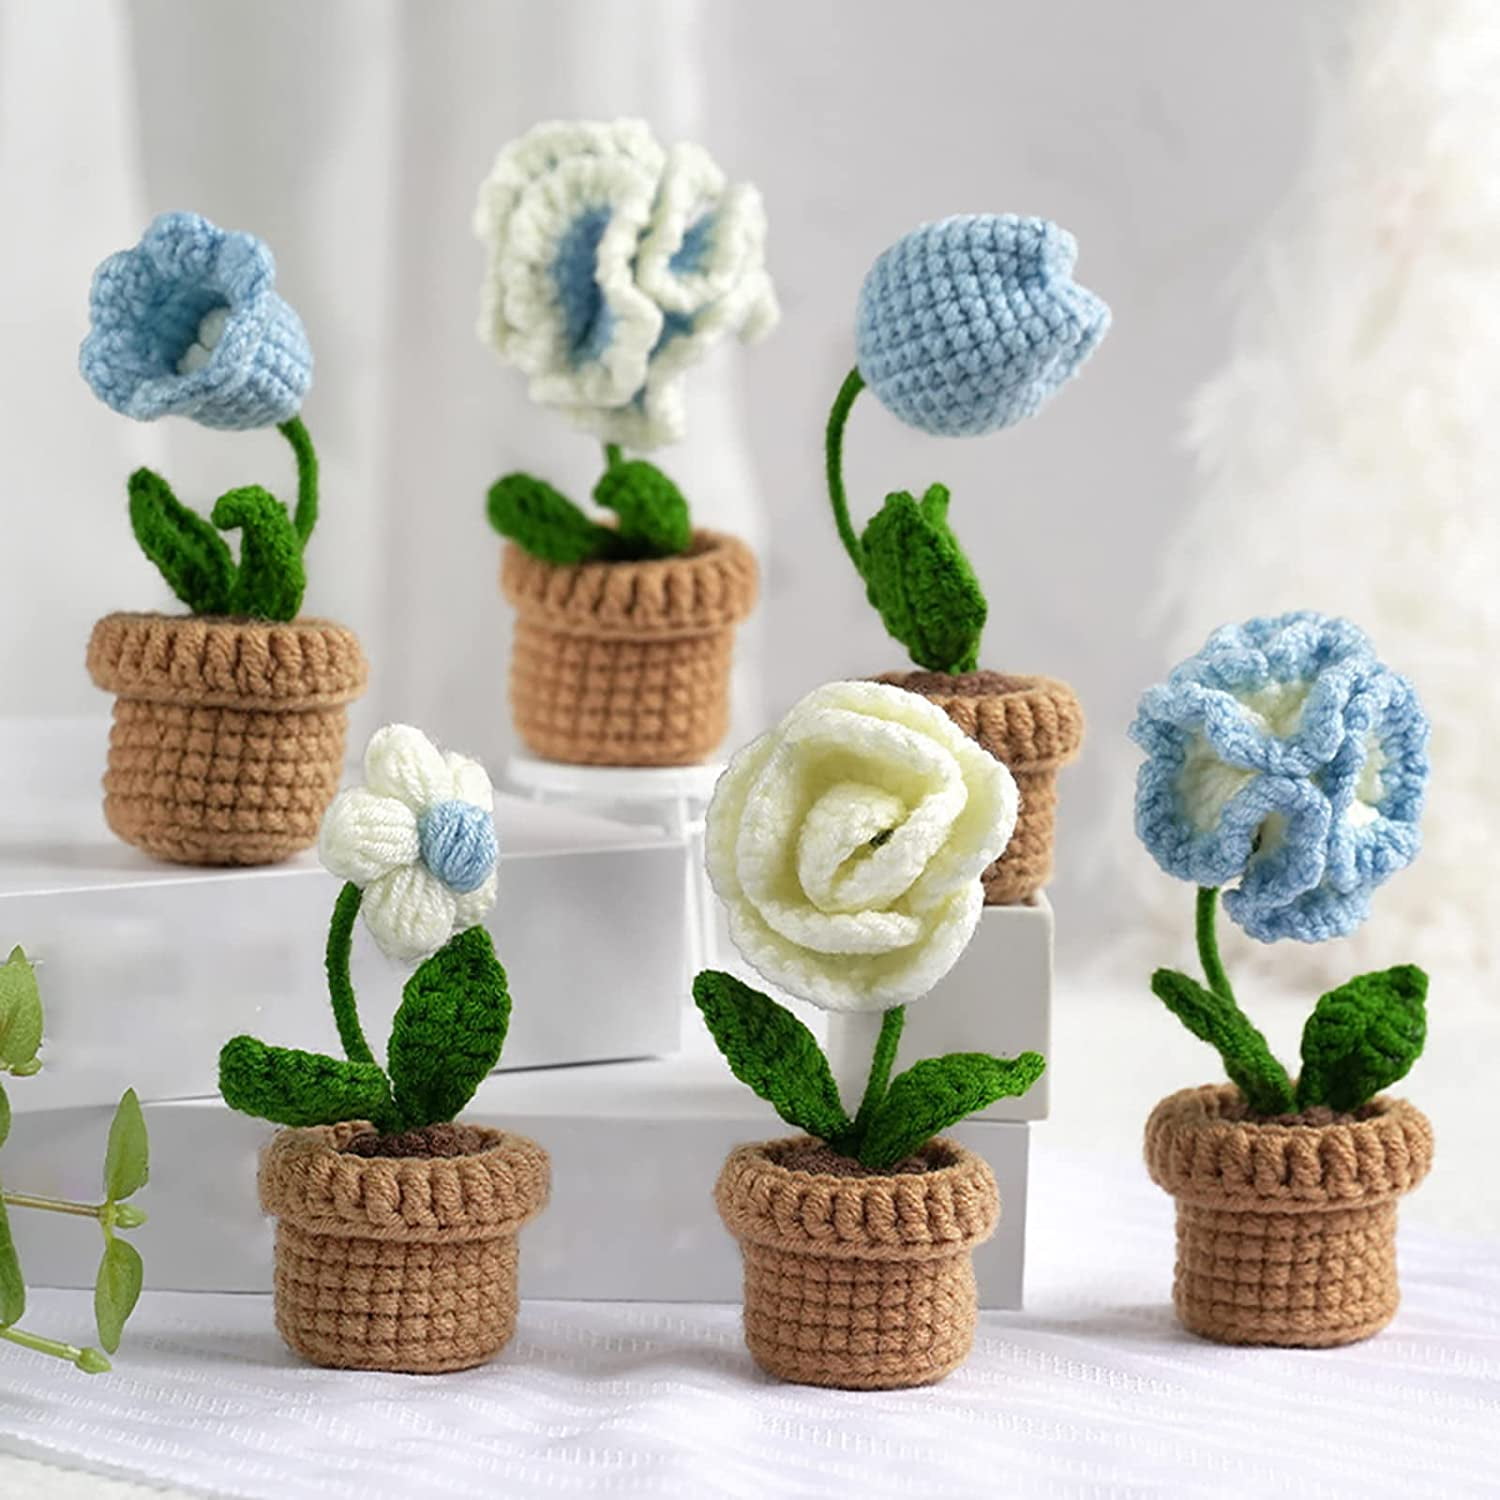 FreeNFond Crochet Kit for Beginners, Potted Plants Crochet Starter